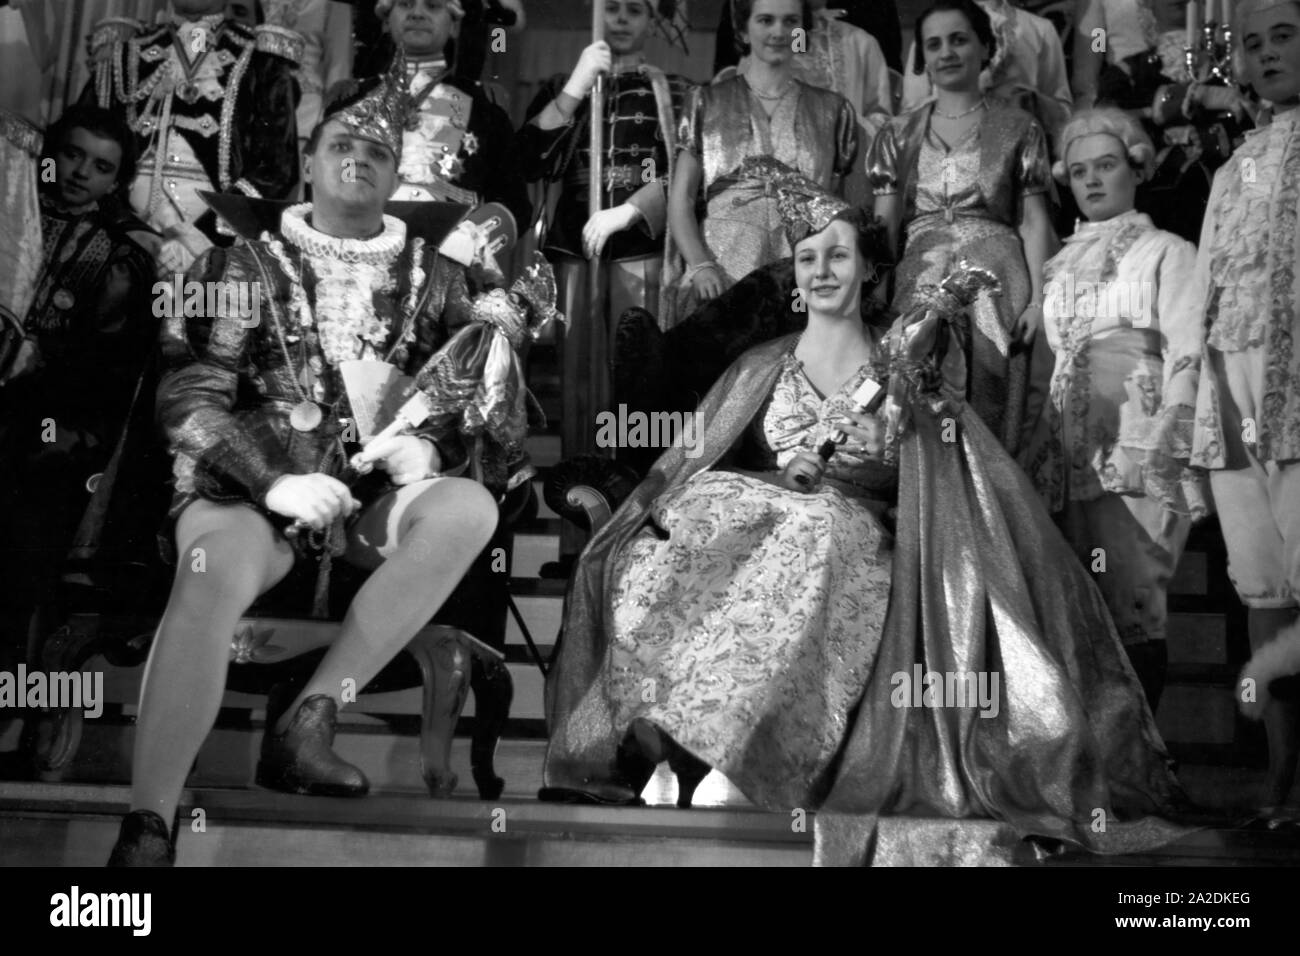 Das Prinzenpaar der Mainzer Fastnacht 1938, Martin Ohaus und Hildegard Kühne, anläßlich des 100. Jubiläums des MCV. Il principe e la principessa del carnevale in Mainz, 1938. Foto Stock